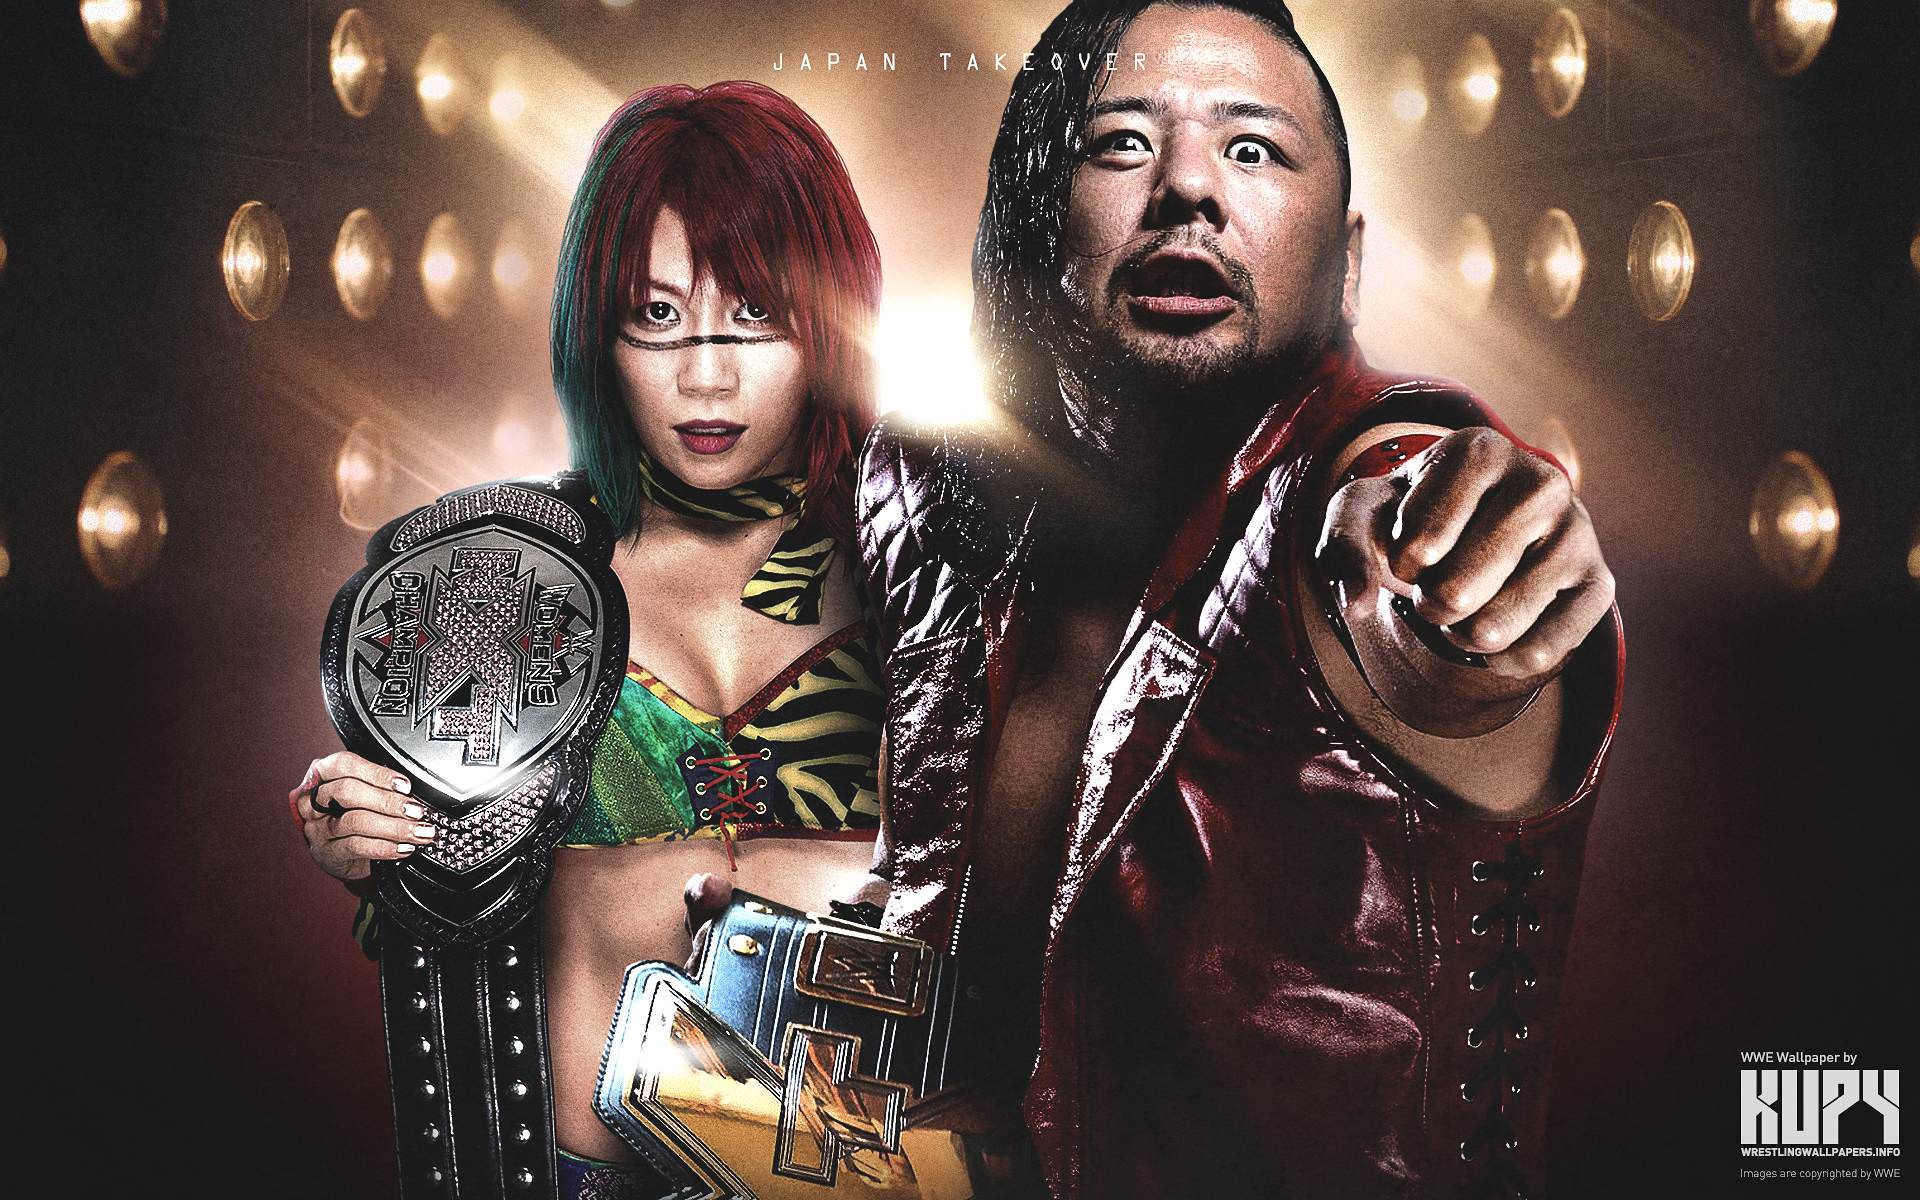 NEW Asuka x Shinsuke Nakamura NXT Champions wallpaper!